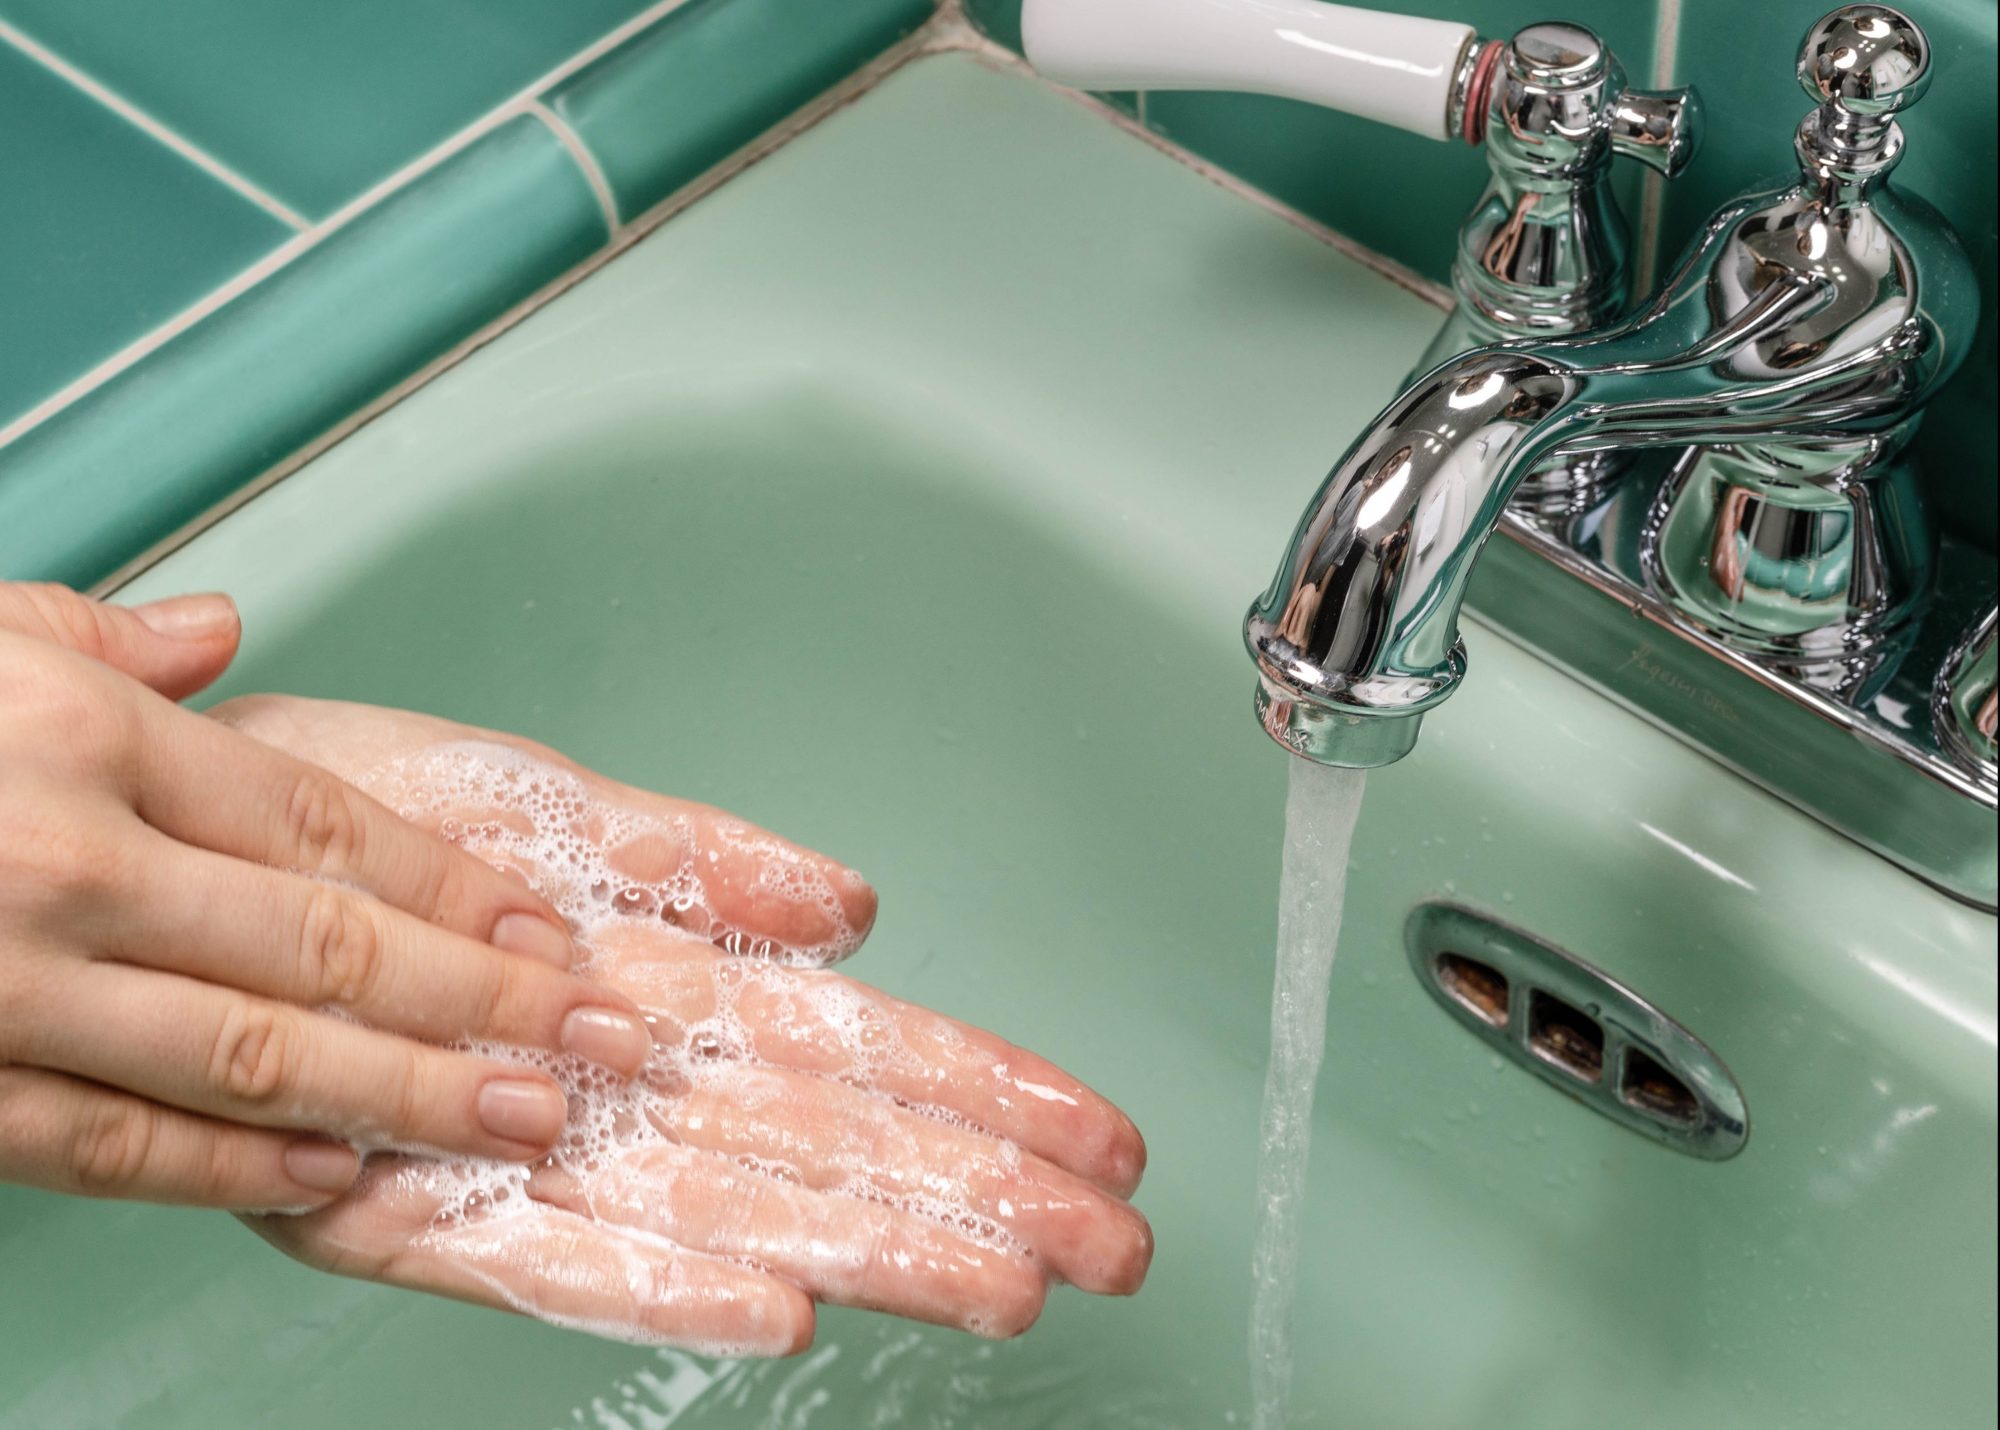 Γιατί δεν πρέπει να πλένεις το πρόσωπό σου με σαπούνι χεριών